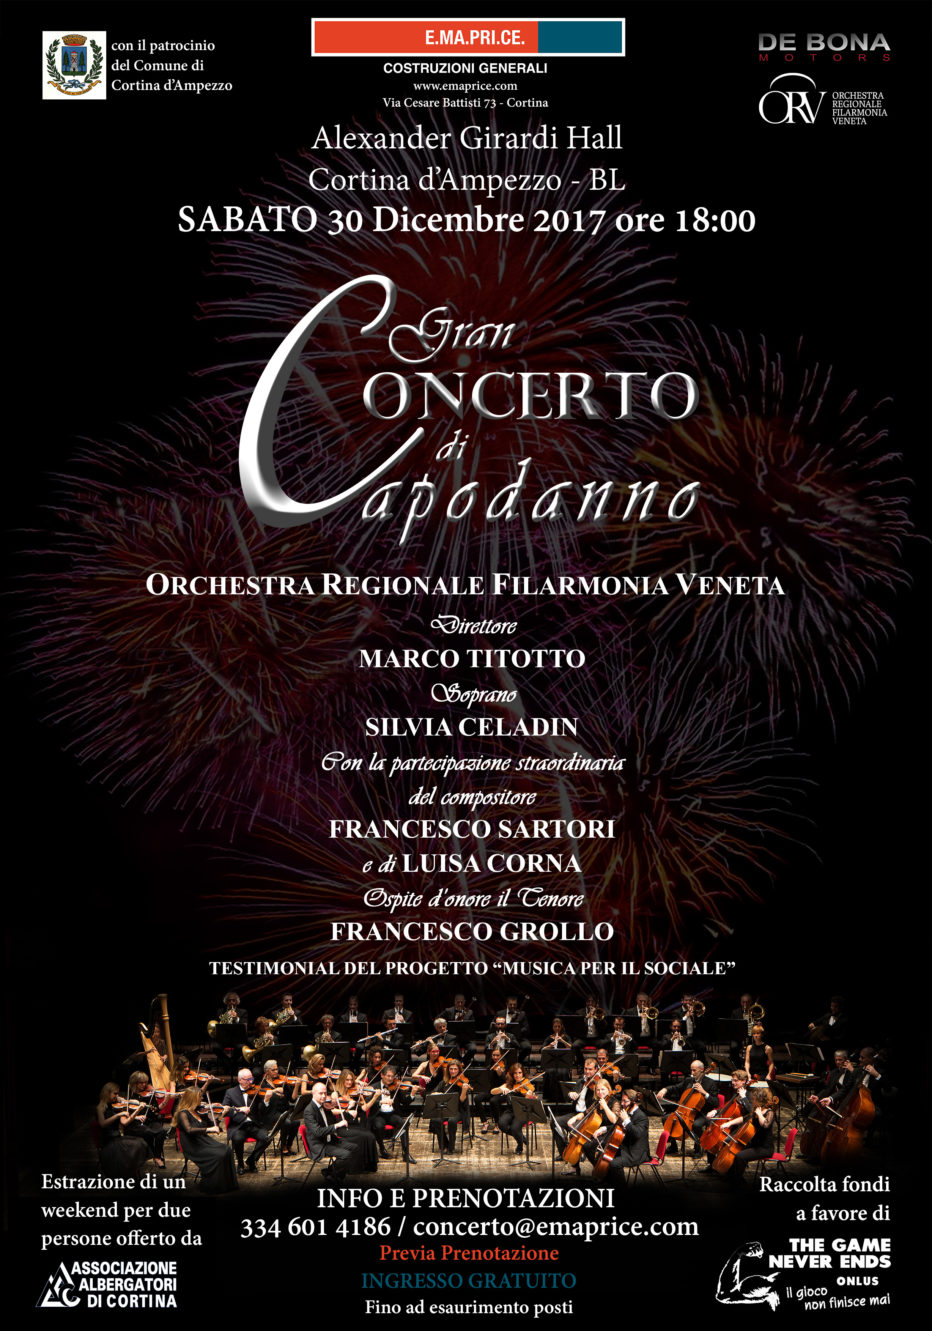 Sabato 30 dicembre 2017: E.MA.PRI.CE. S.p.A. costruzioni generali, è orgogliosa di invitarvi al Gran Concerto di Capodanno.